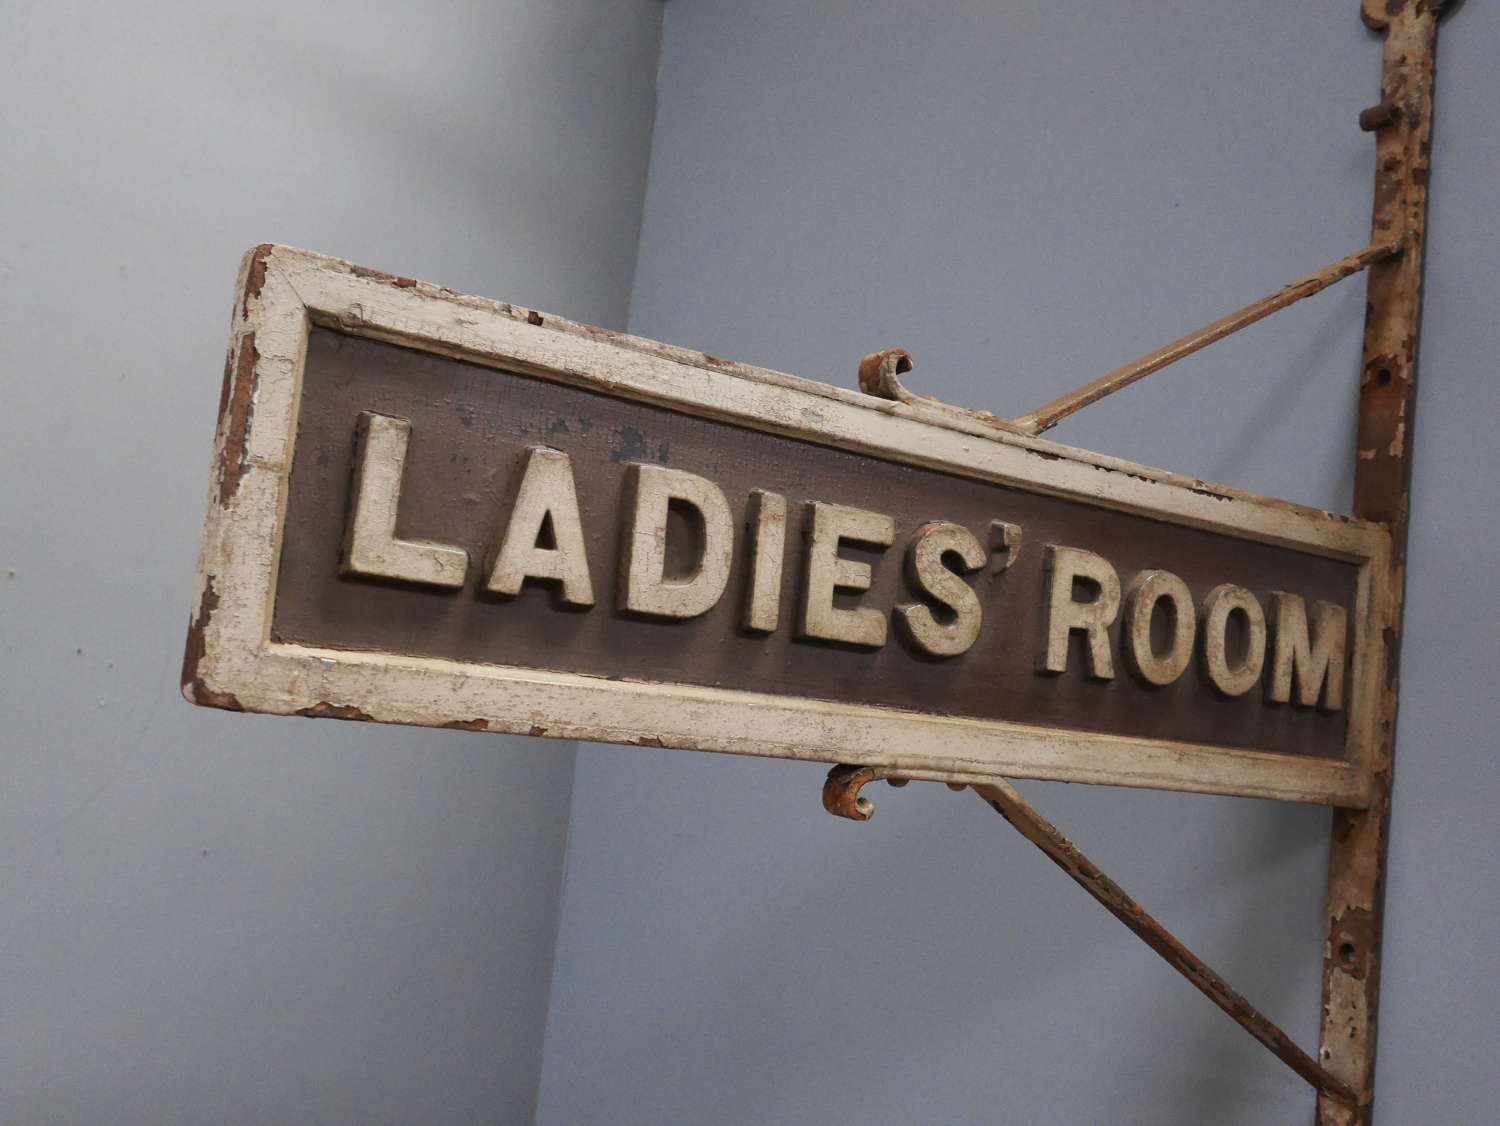 Ladies' Room c1890